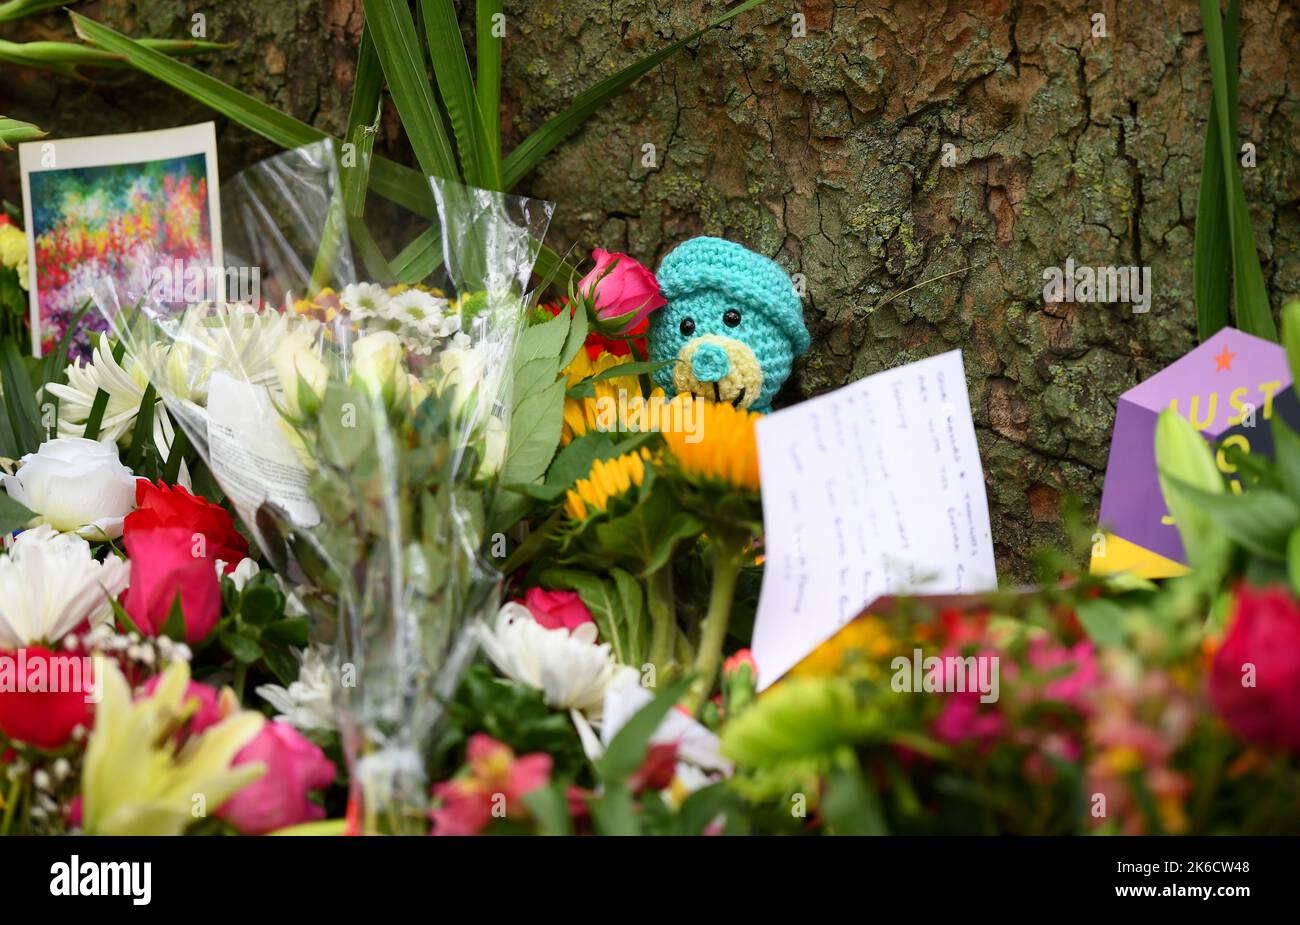 Un hommage tricoté à la Reine tardive se trouve parmi les fleurs à Green Park Londres Royaume-Uni. Banque D'Images